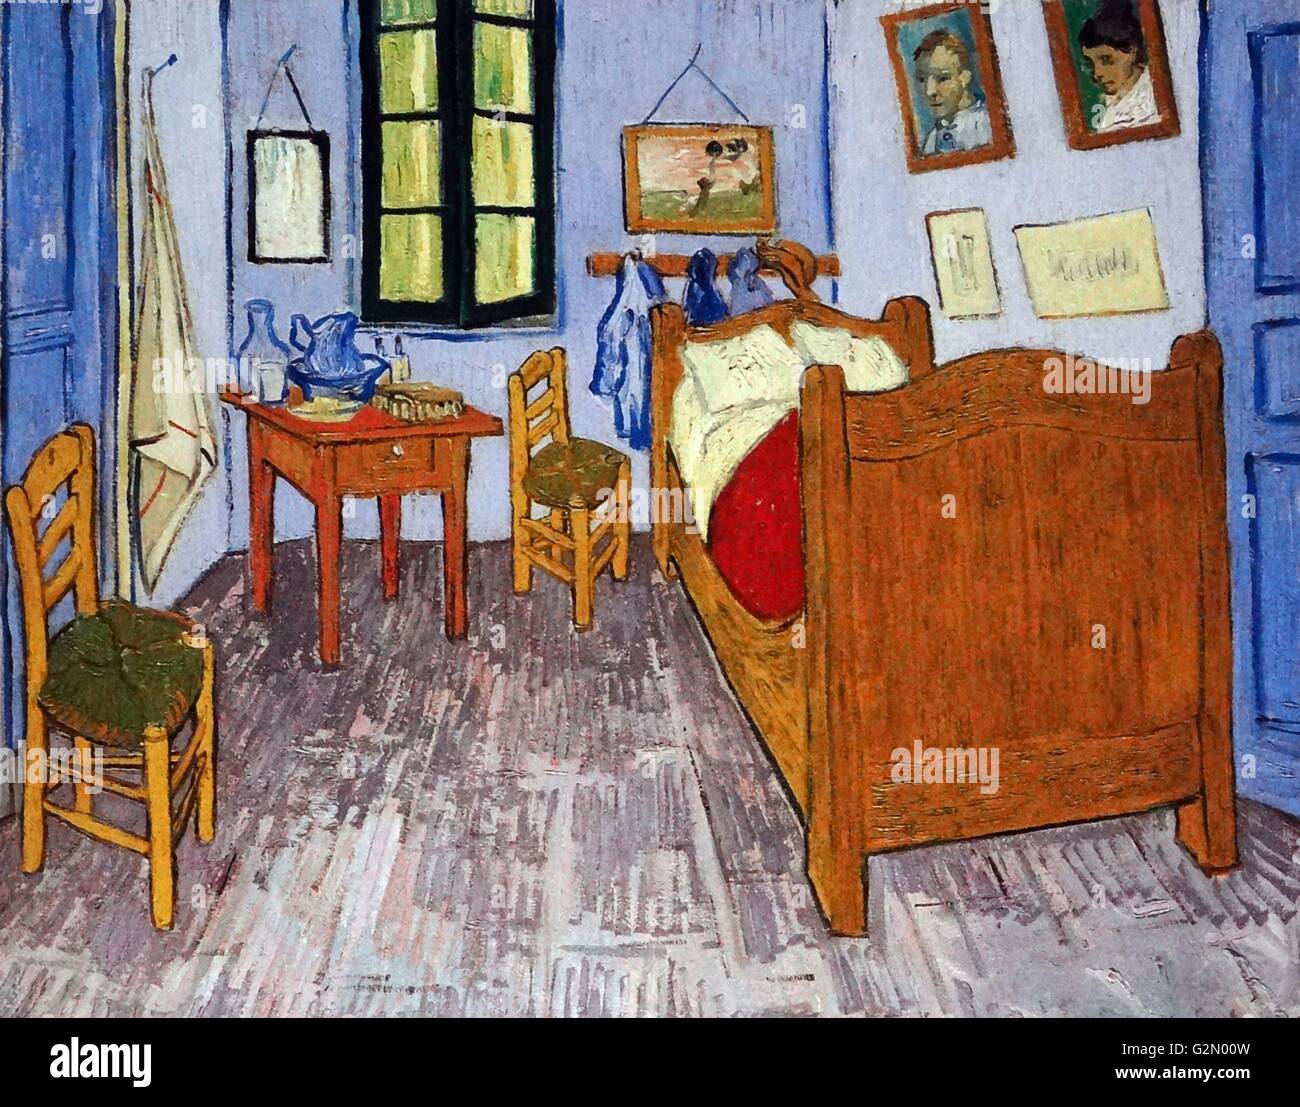 Dipinto dal famoso artista olandese Vincent Van Gogh (30 marzo 1853 - 29 luglio 1890), lavoro intitolato "La camera da letto". Completata nel 1889. Foto Stock